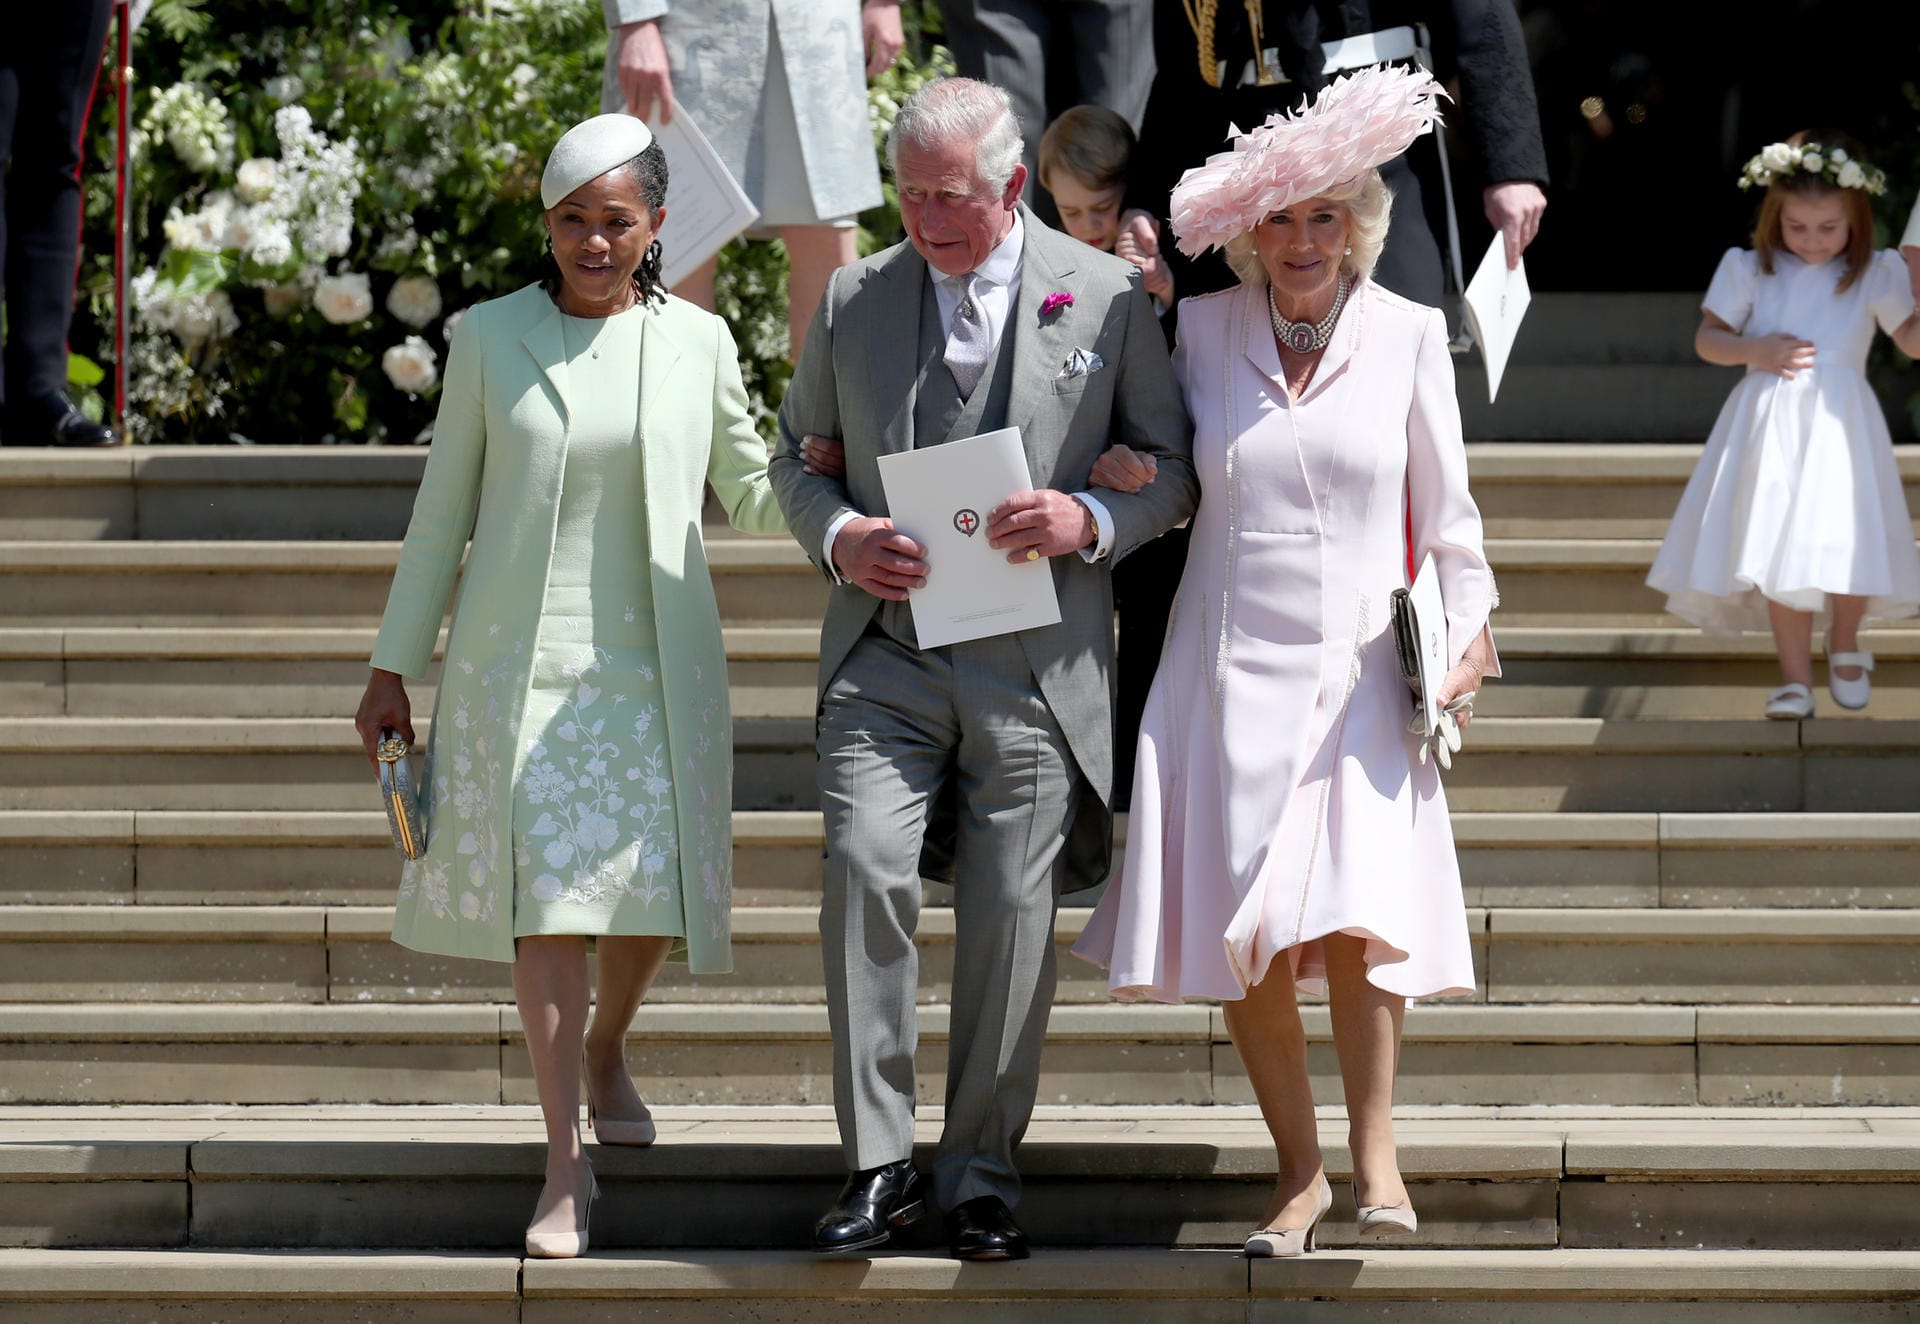 Prinz Charles verlässt die Kirche mit zwei Damen: Meghans Mutter Doria Ragland kam ohne Begleitung, also holt er sie kurzerhand zu sich und Camilla.